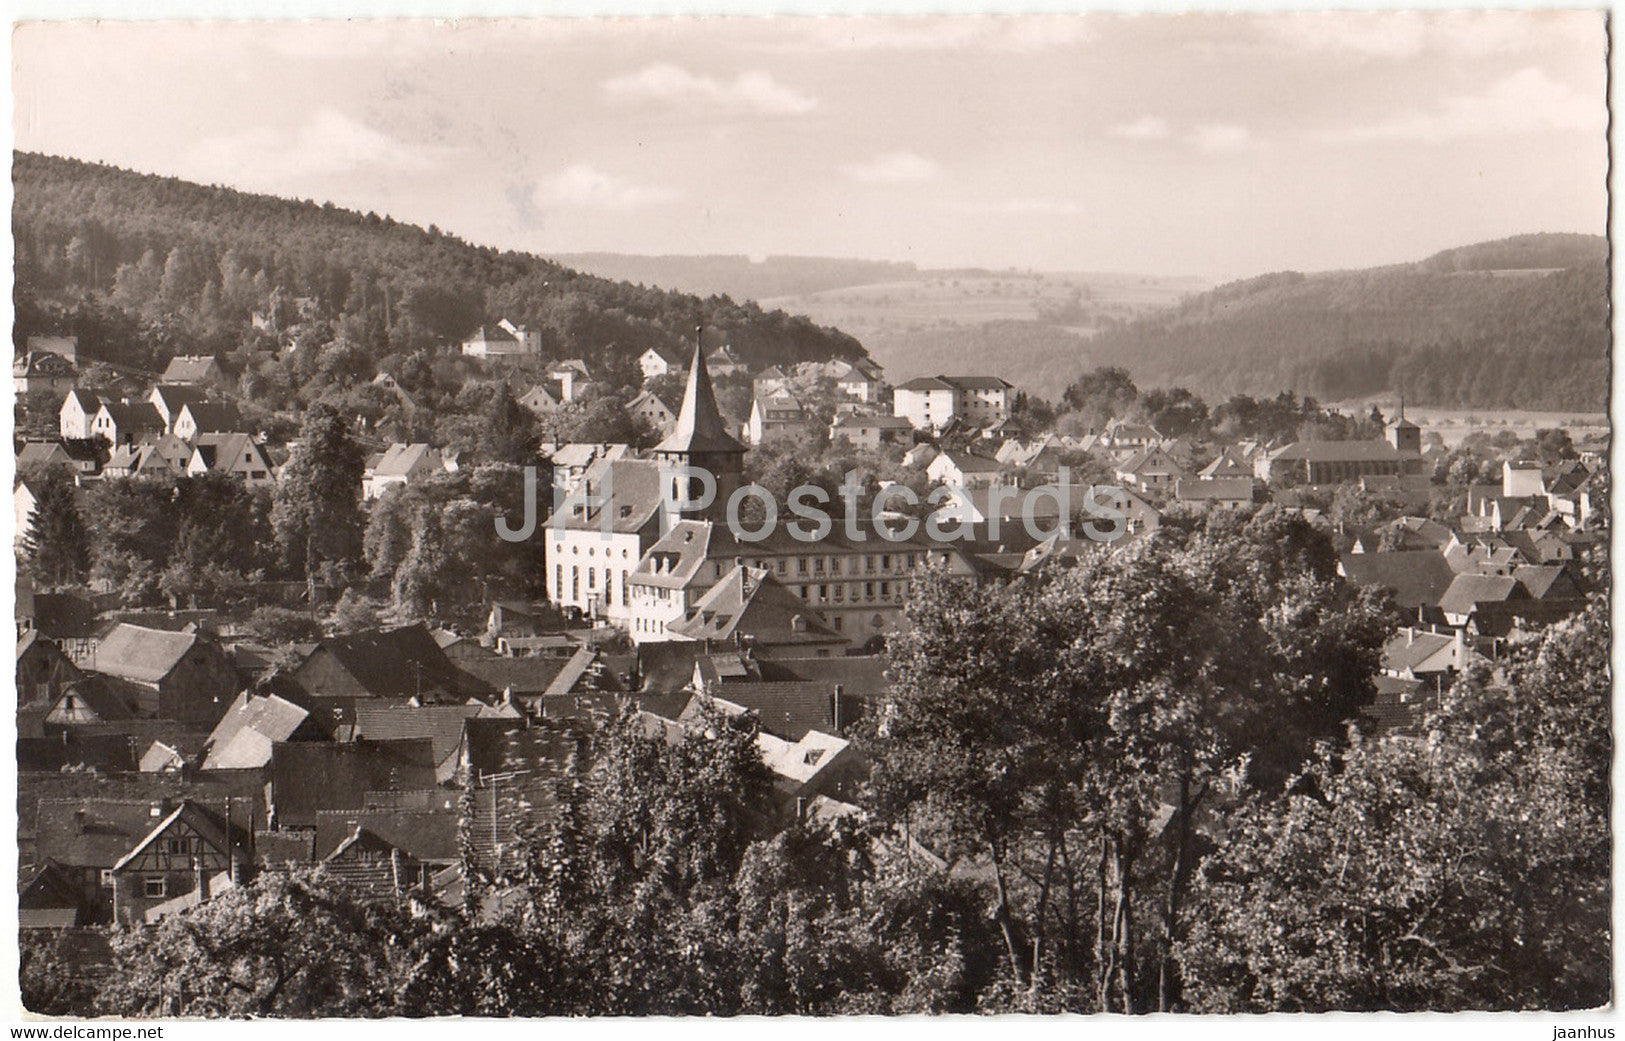 Bad Konig im Odenwald - 2177 - old postcard - 1950s - Germany - used - JH Postcards